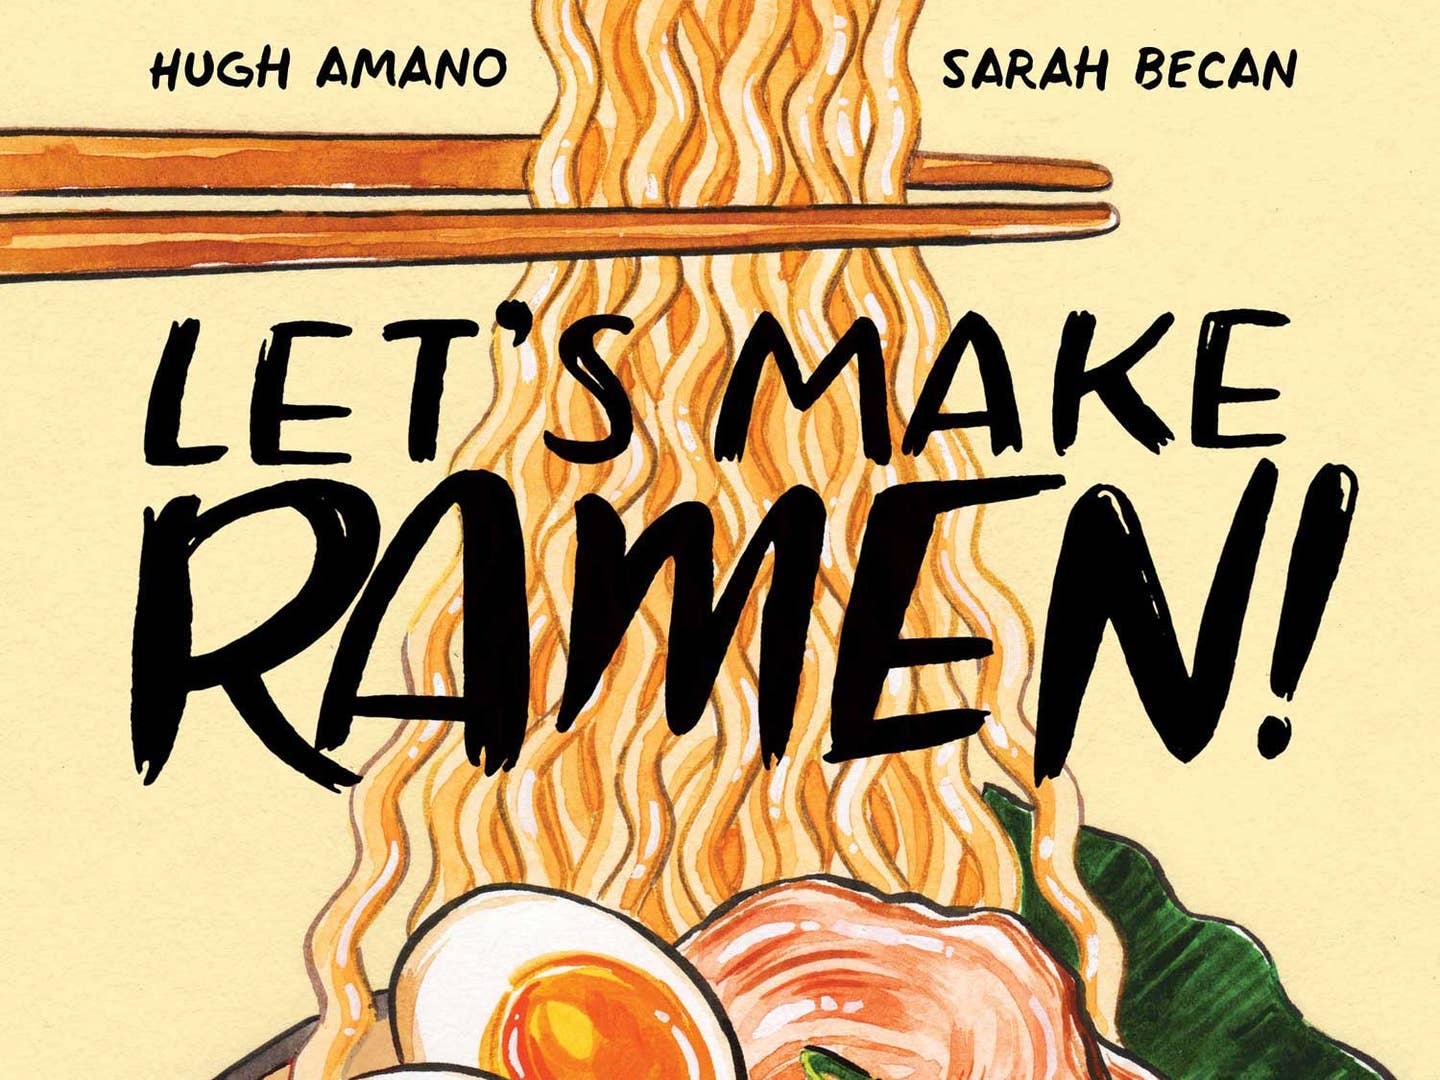 How to Make Homemade Ramen Noodles